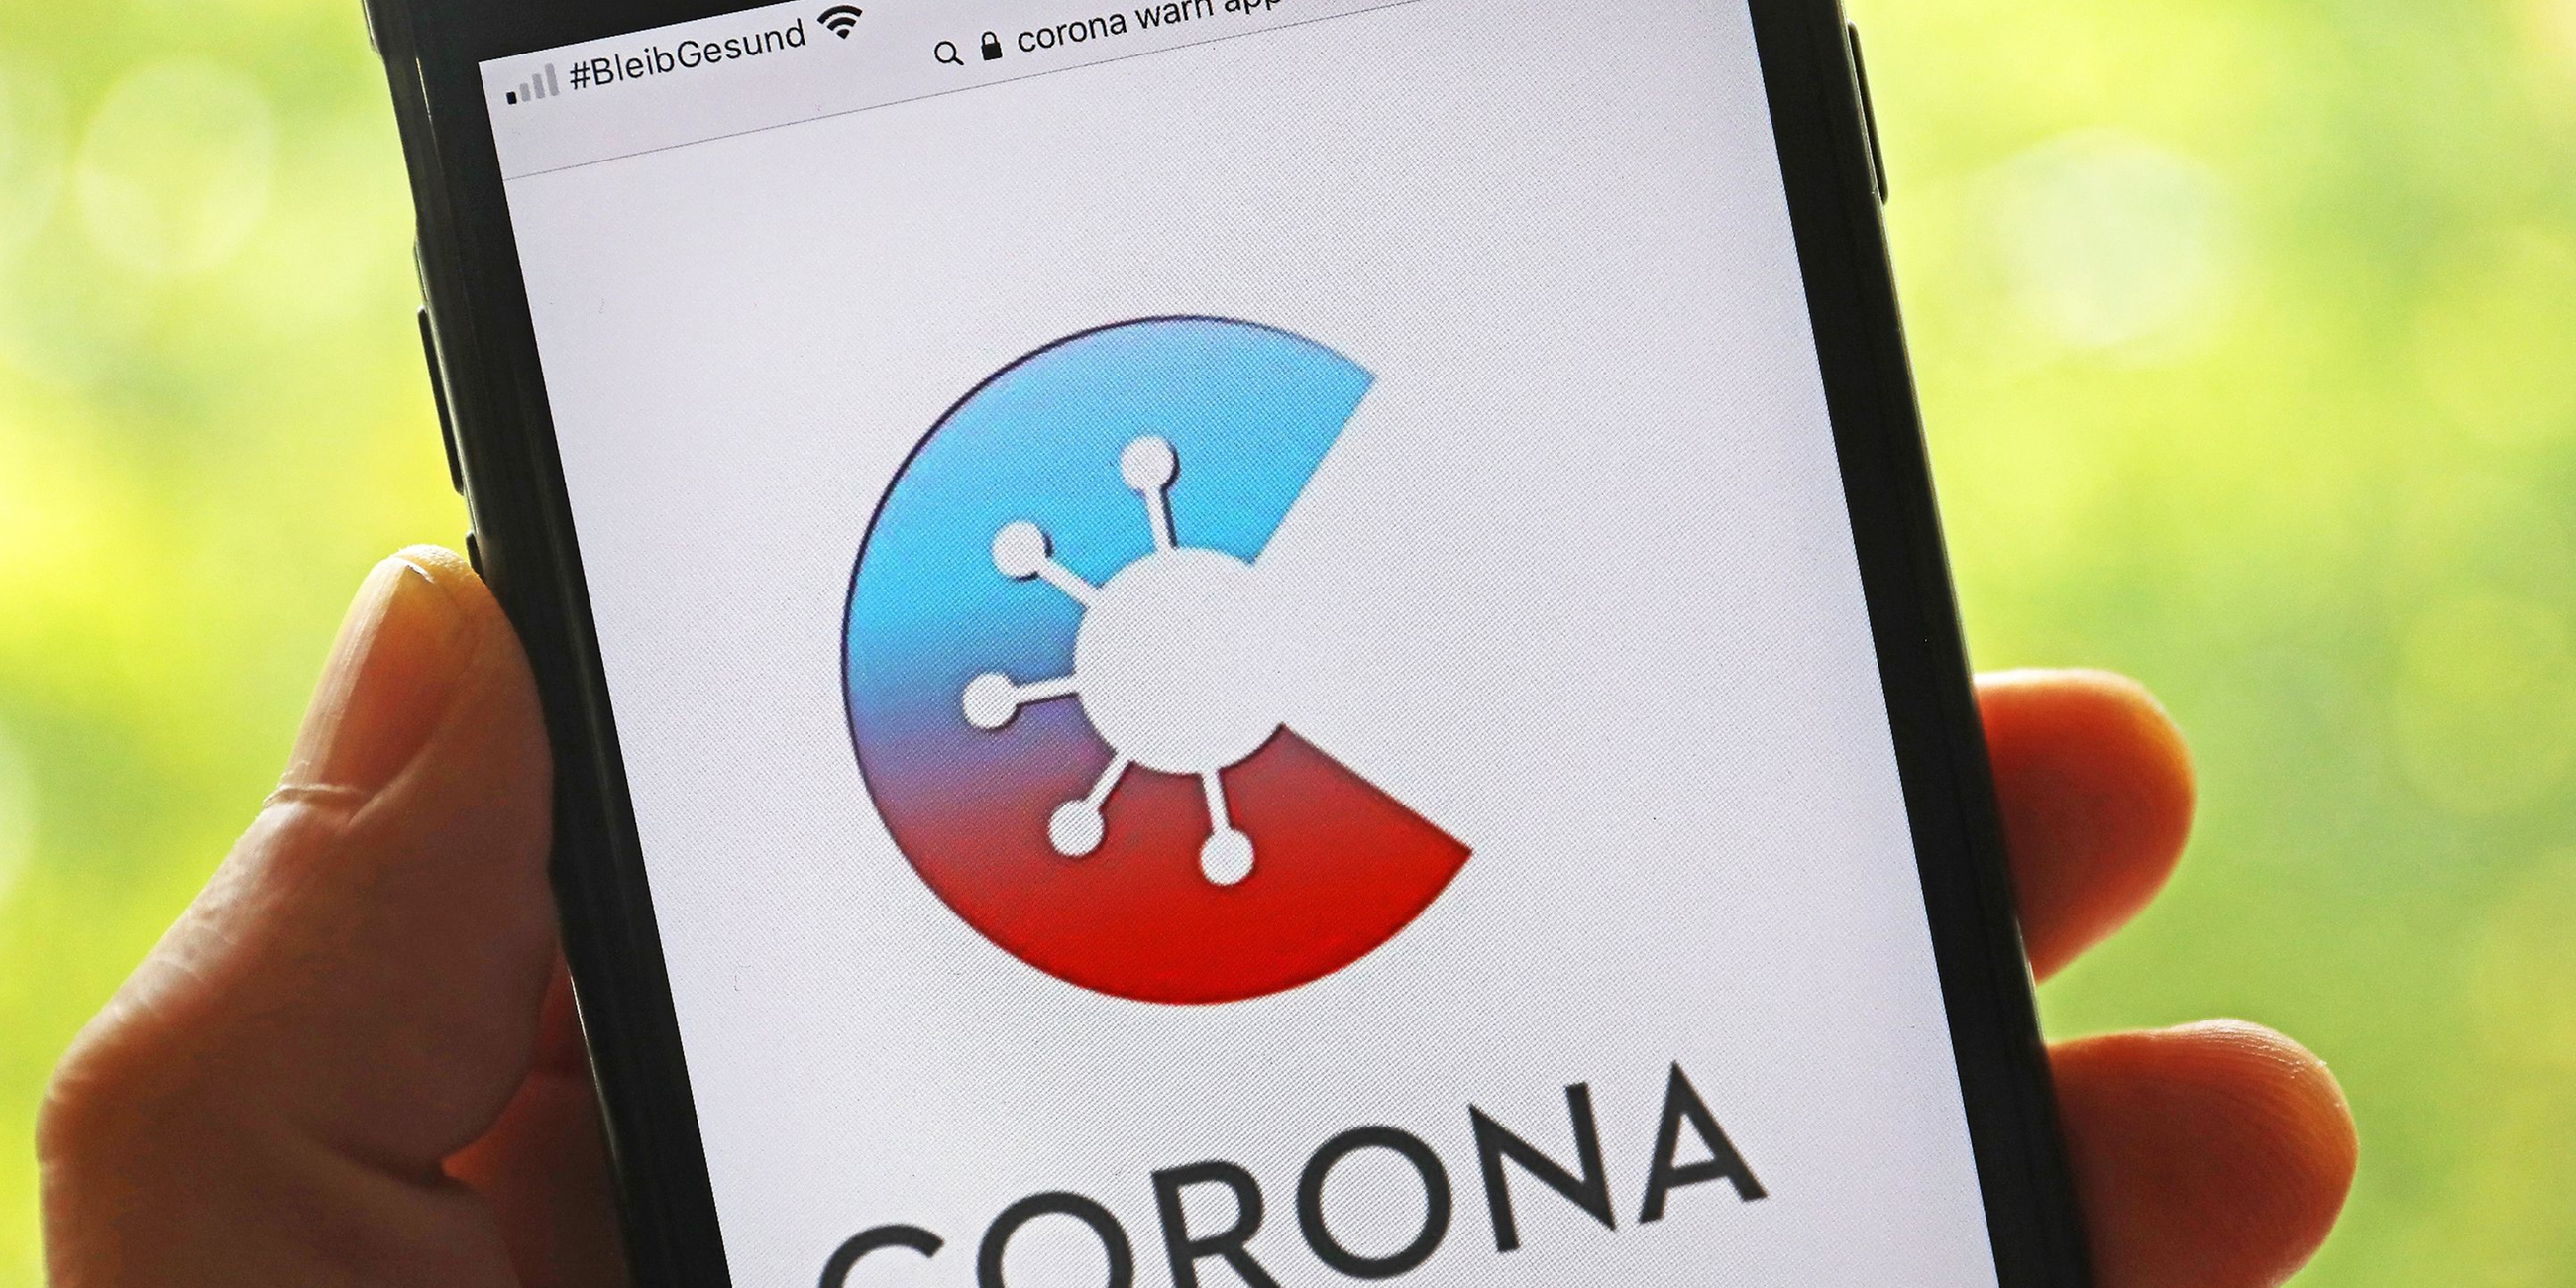 Die Corona-Warn-App auf einem Smartphone.